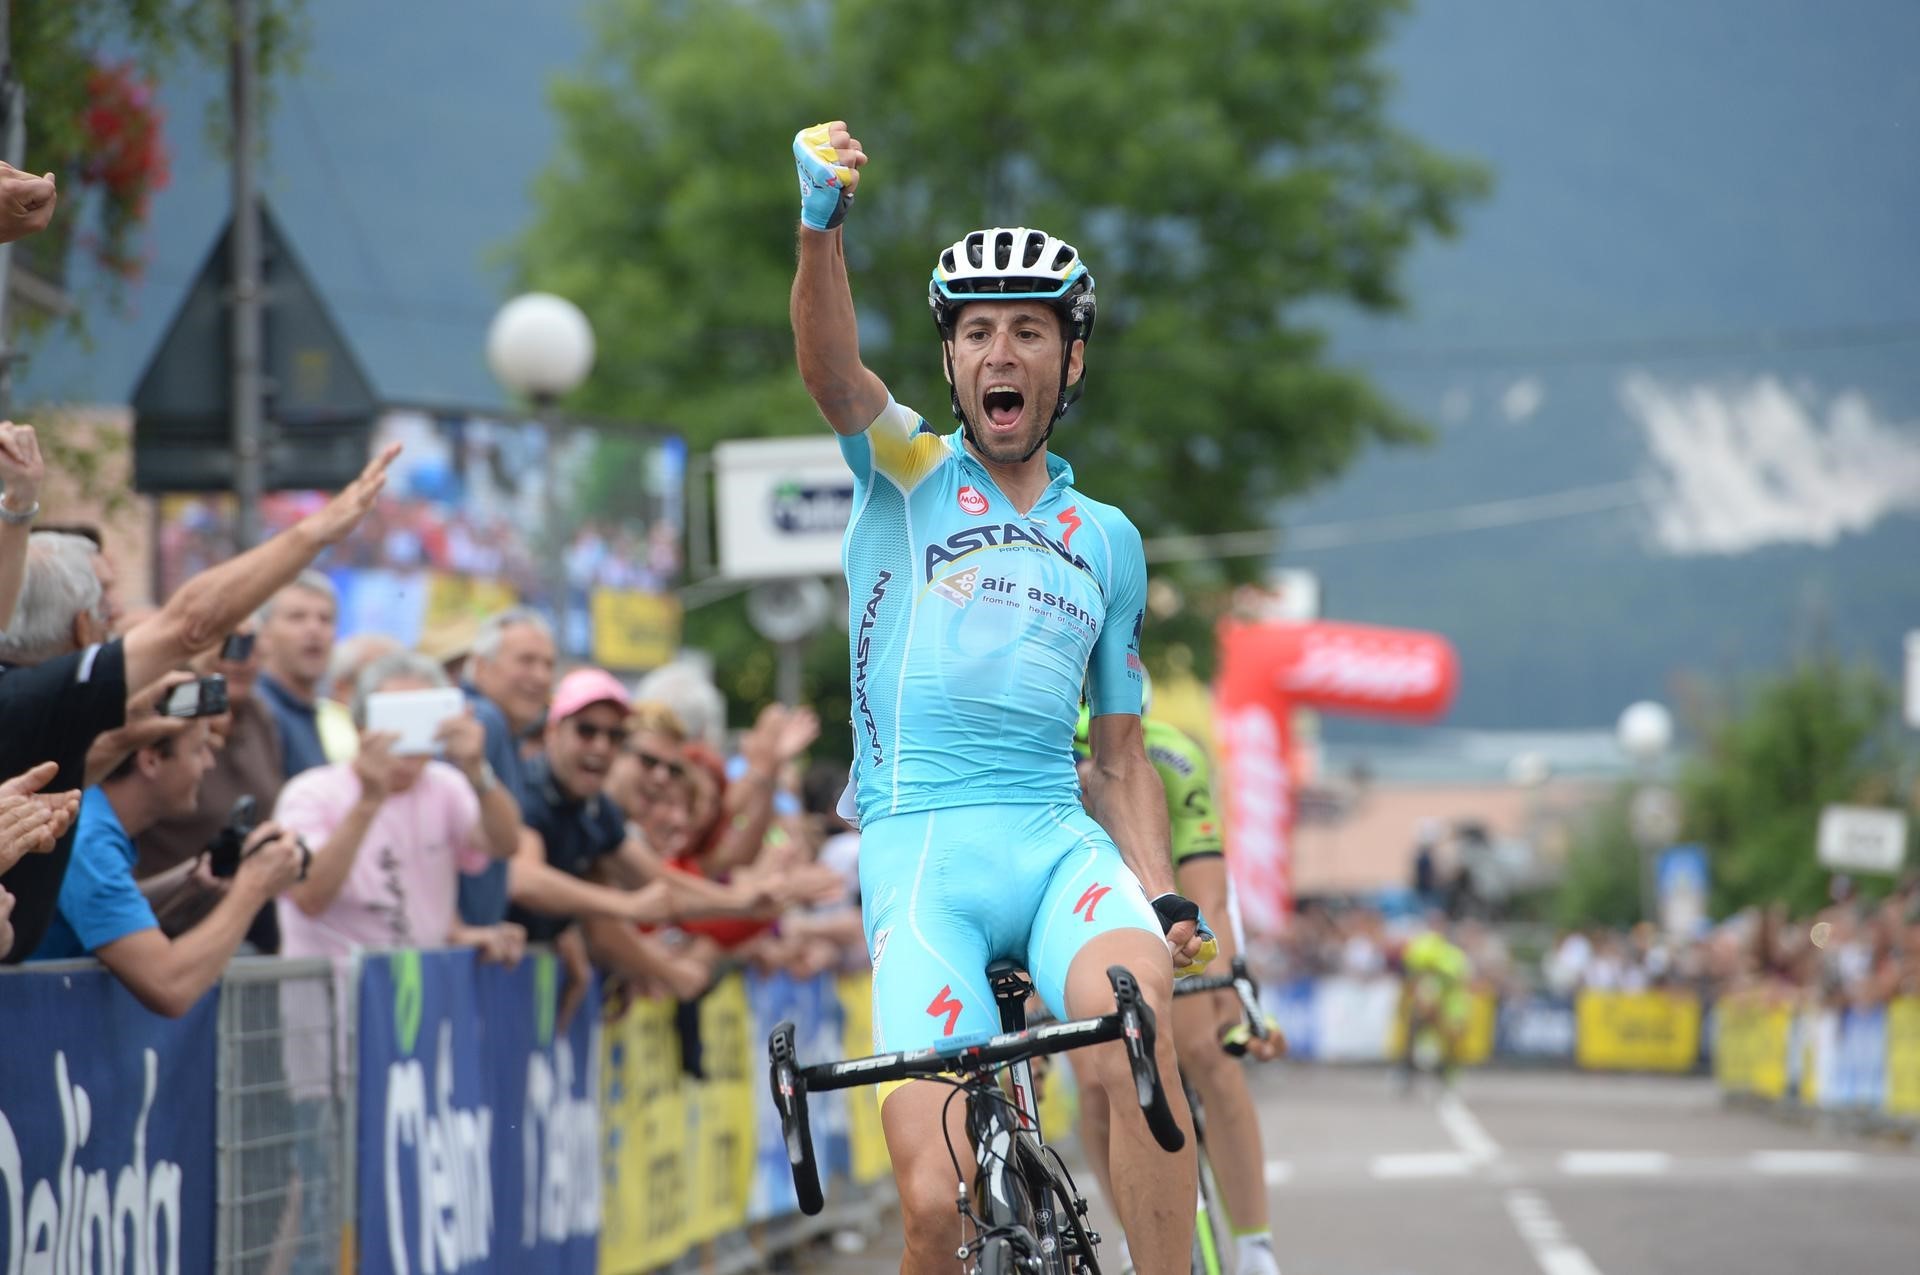 vincenzo nibali campione italiano ciclismo 2014 a braccia alzate sul traguardo